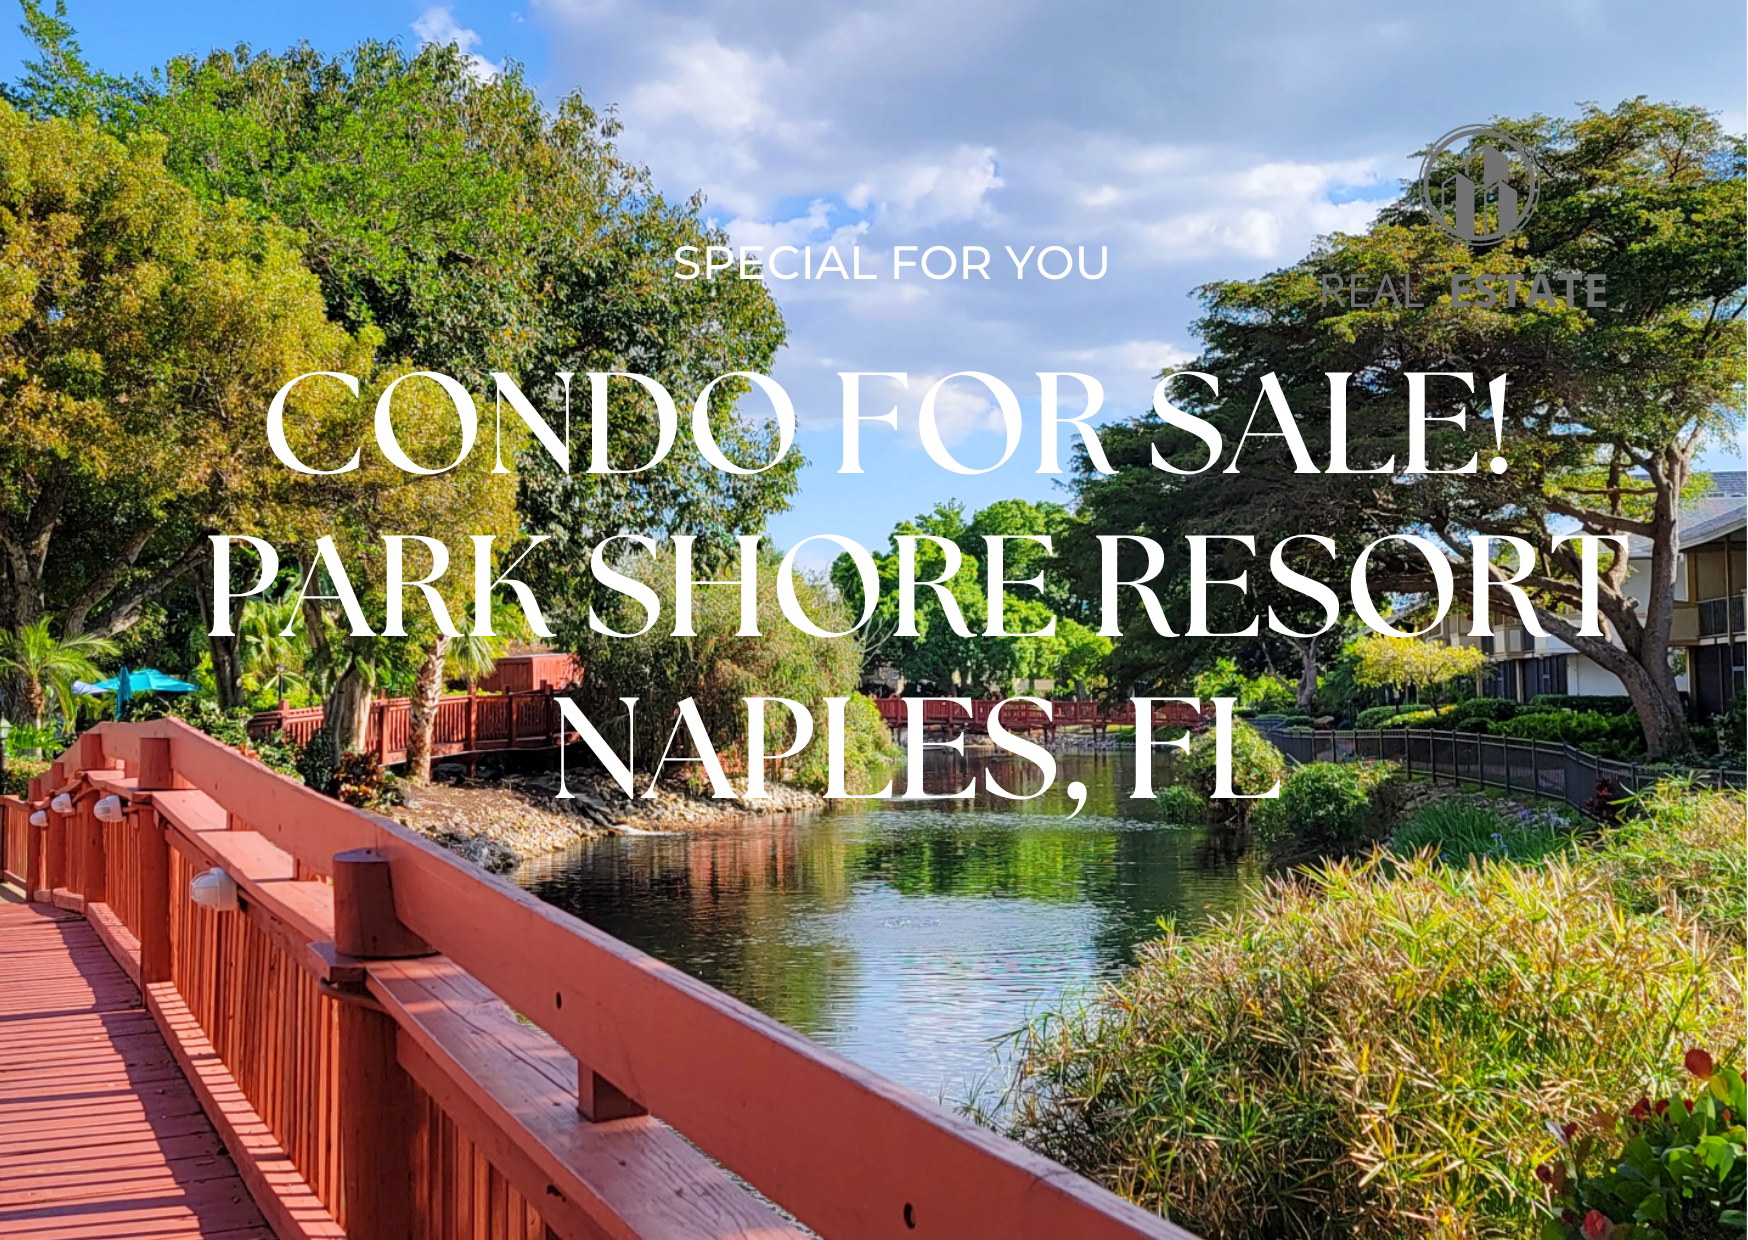 Park Shore resort, condo for sale